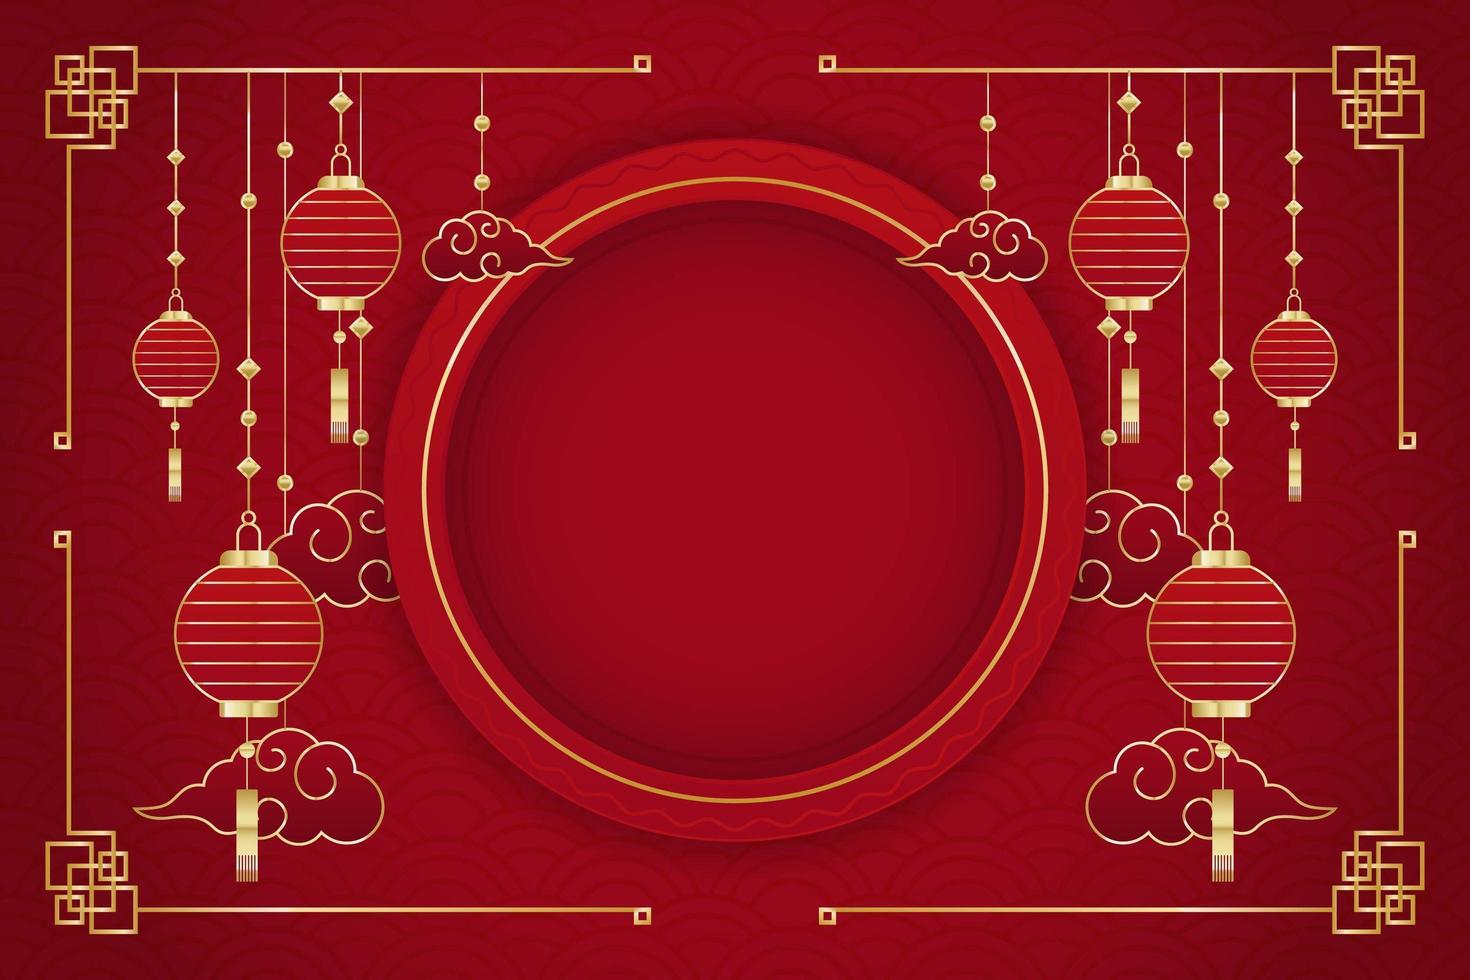 fondo rojo año nuevo chino vector